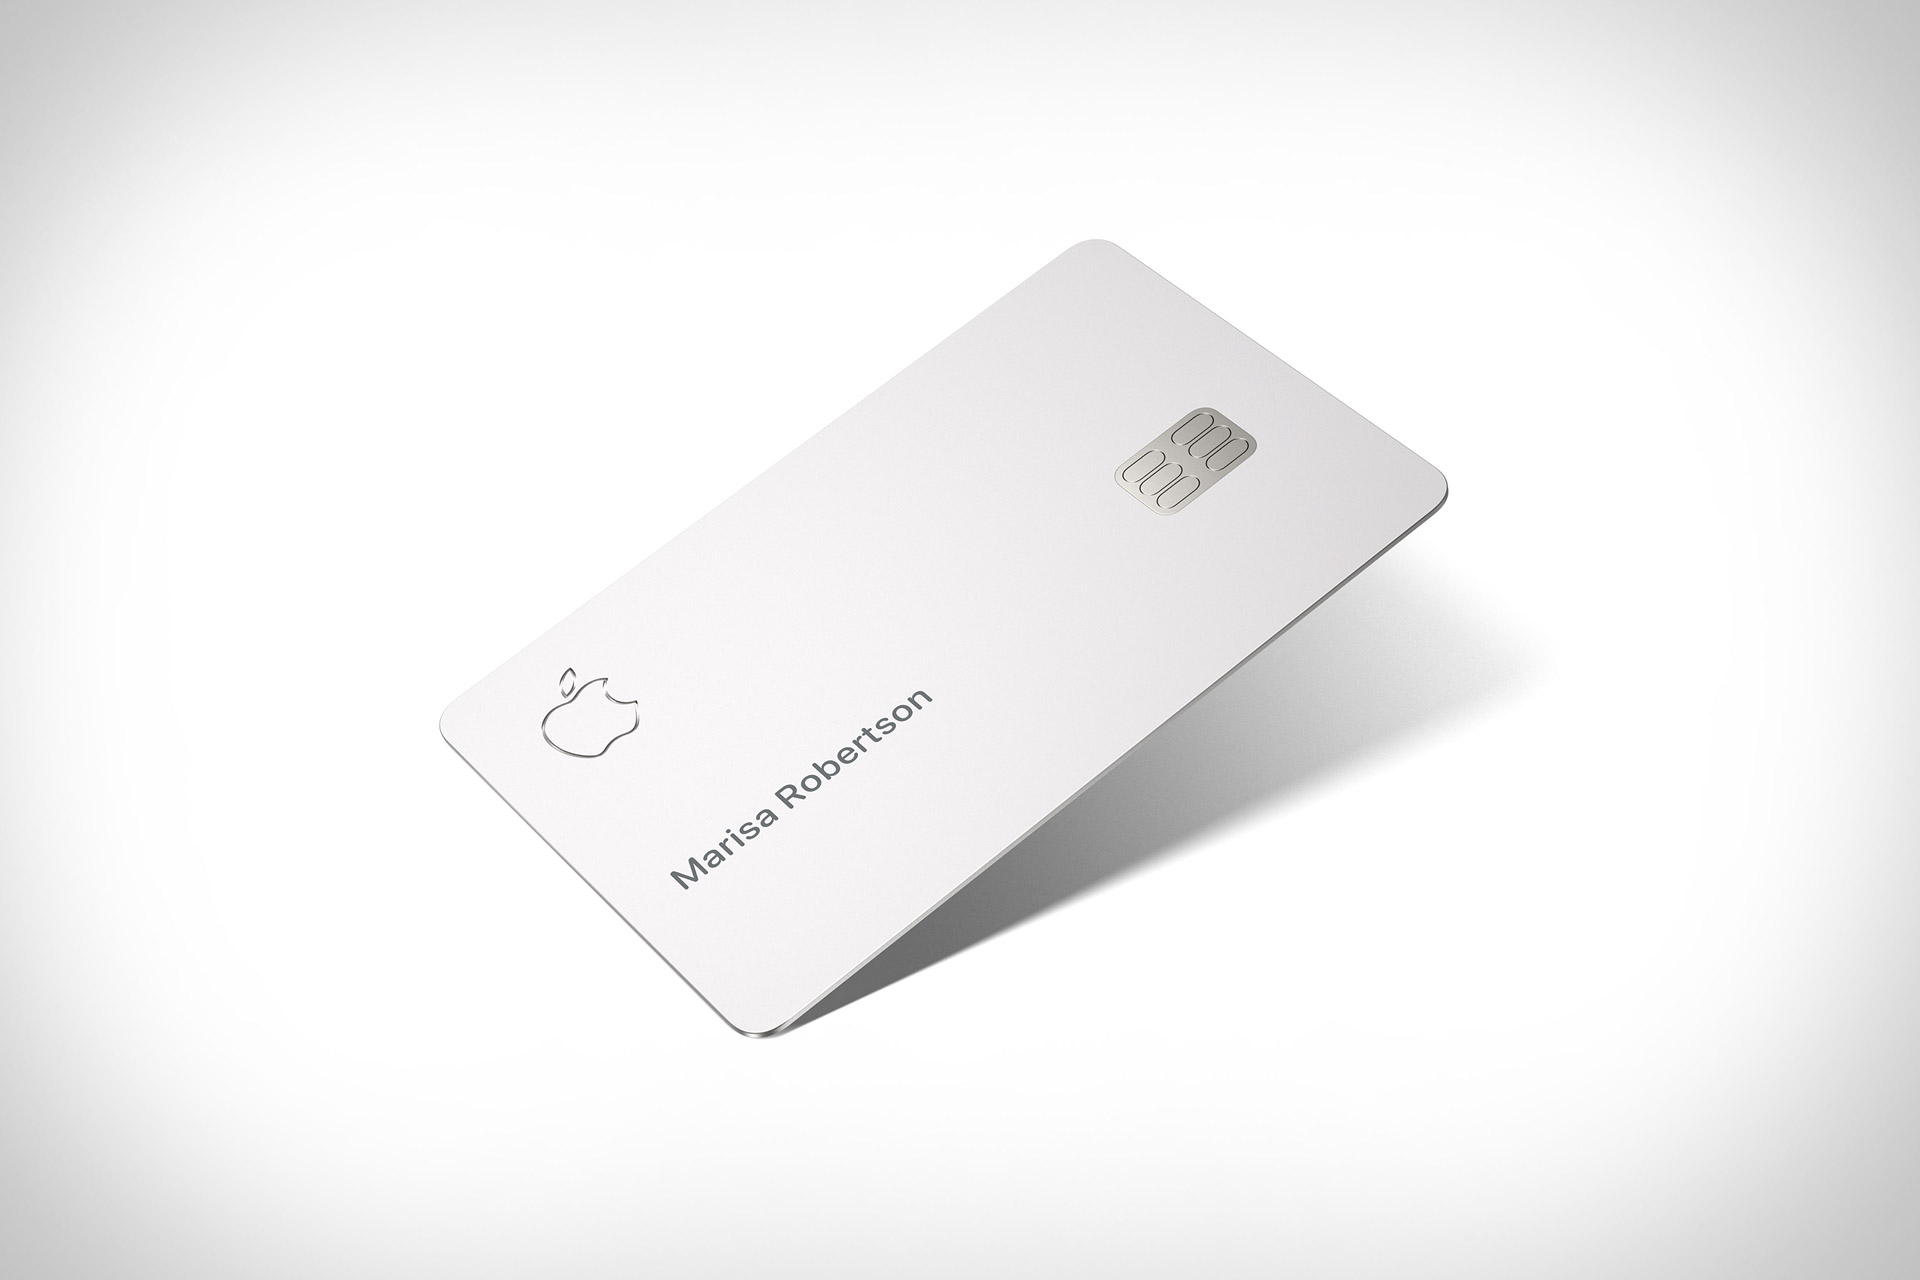 Банковская карта Apple Card не поддерживает бесконтактные платежи